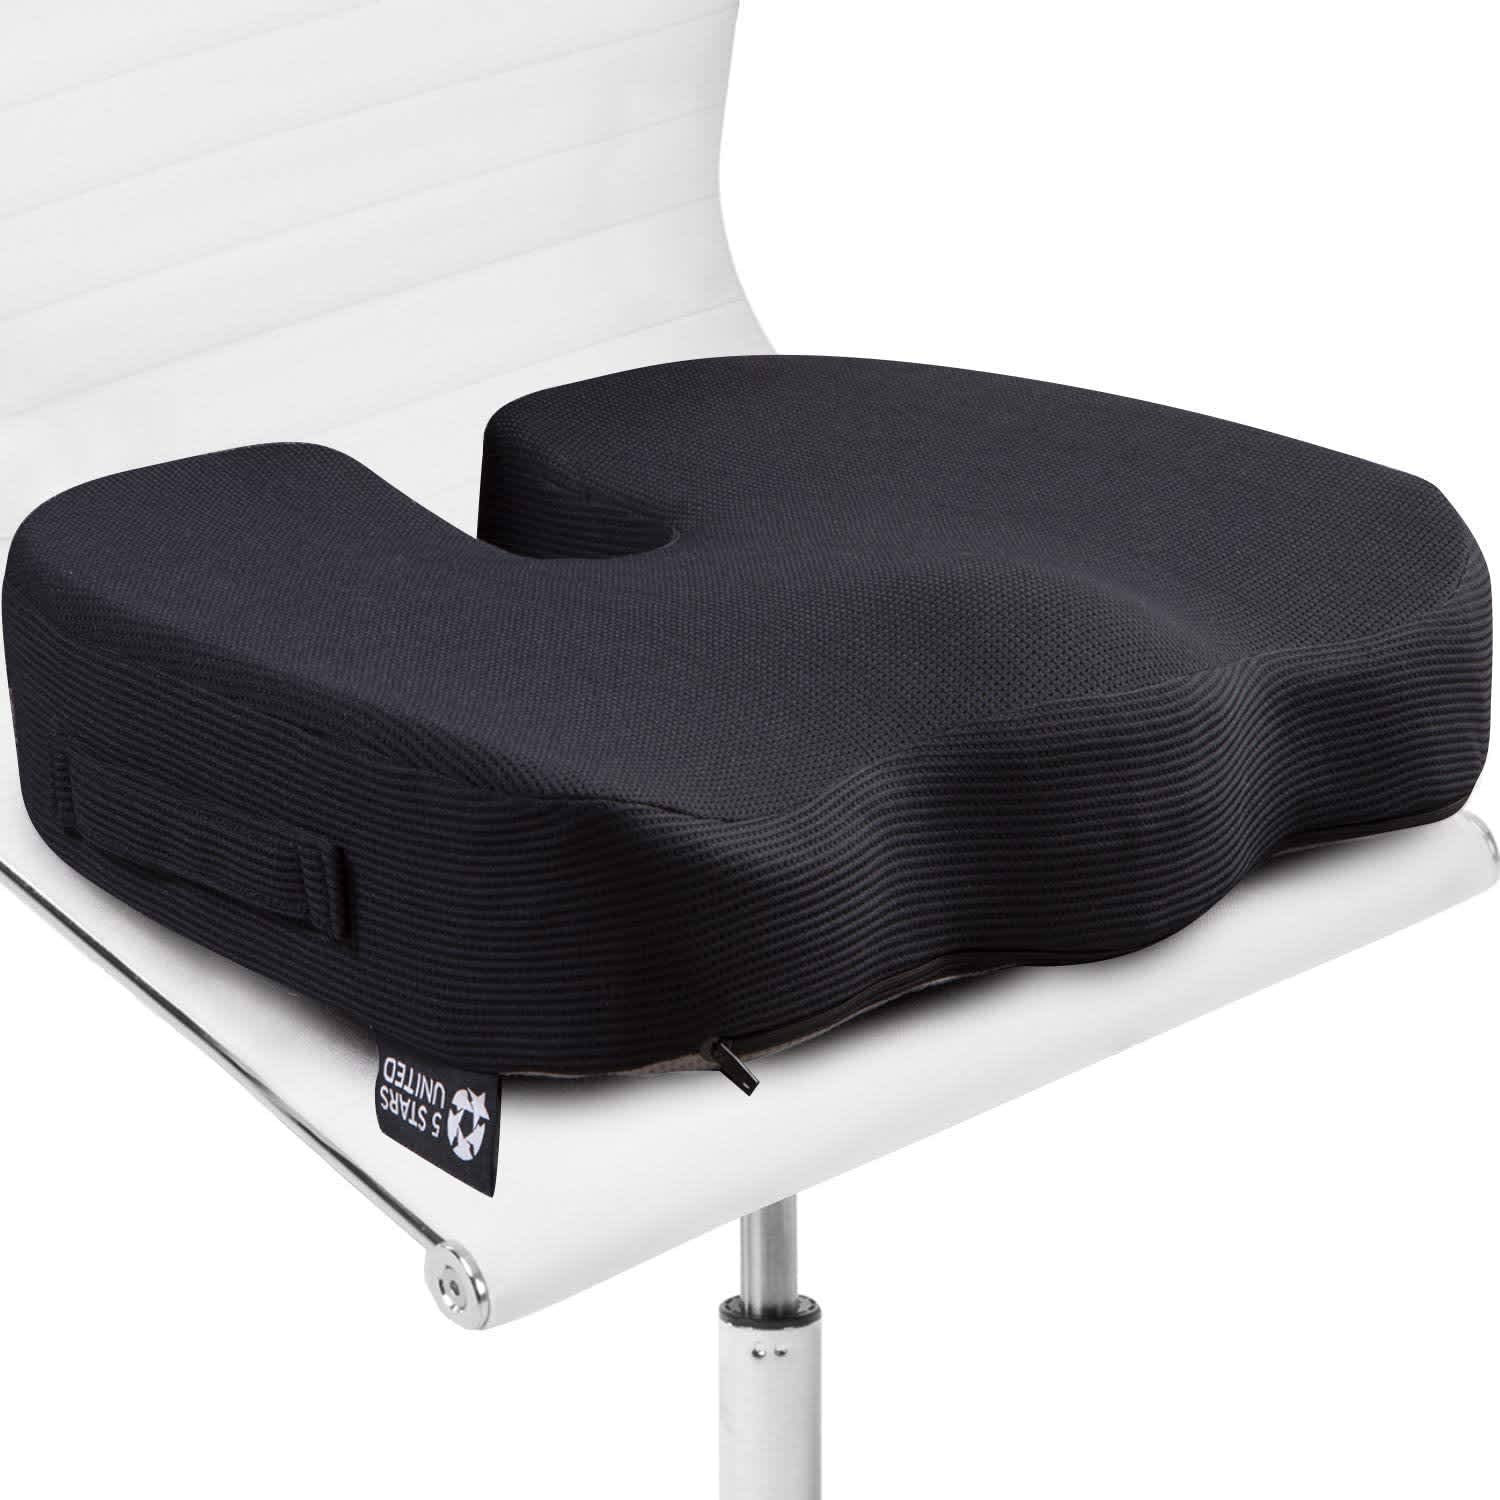 An Honest Review of an  Ergonomic Seat Cushion